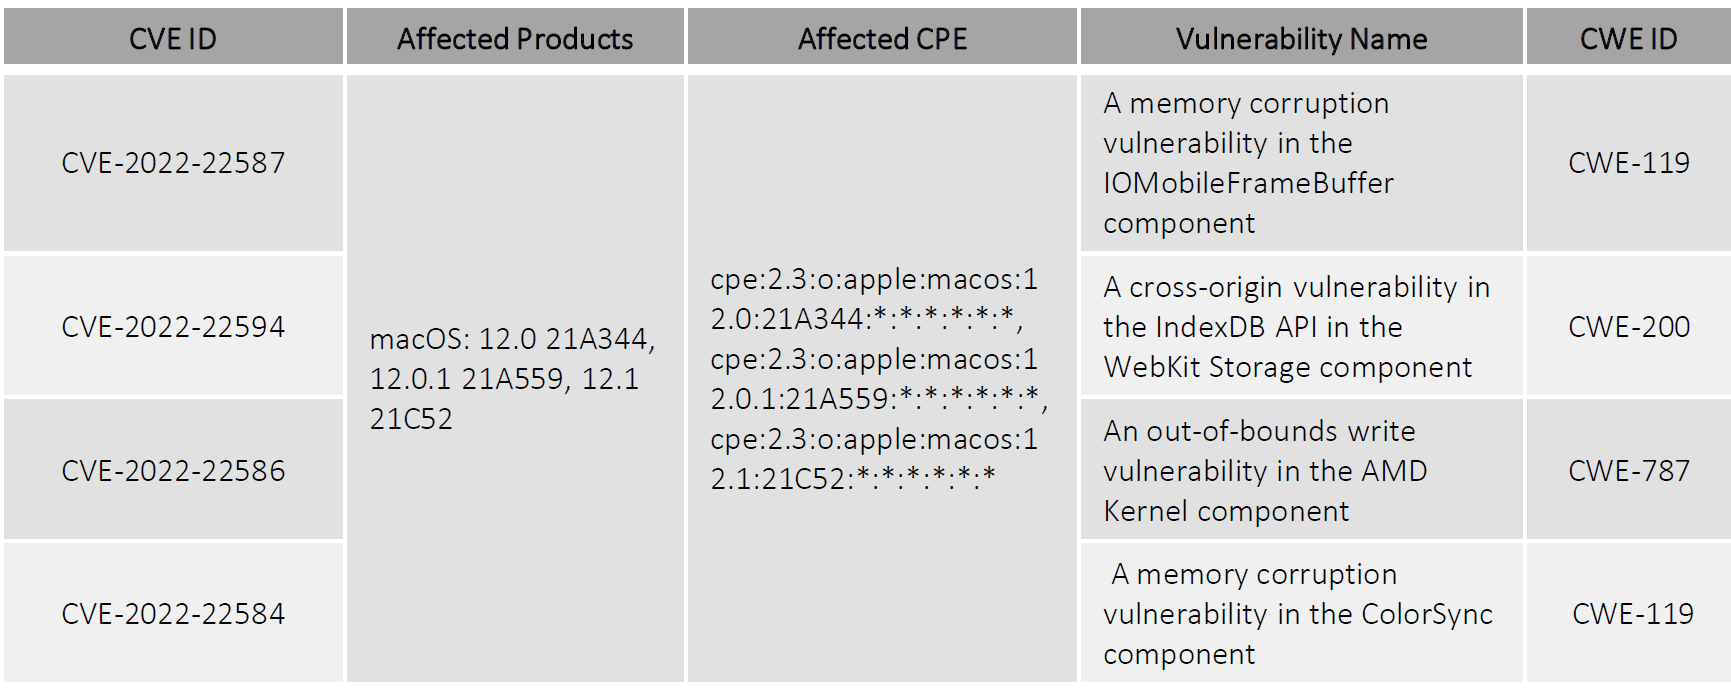 Apple releases macOS Monterey 12.2 to fix multiple vulnerabilities